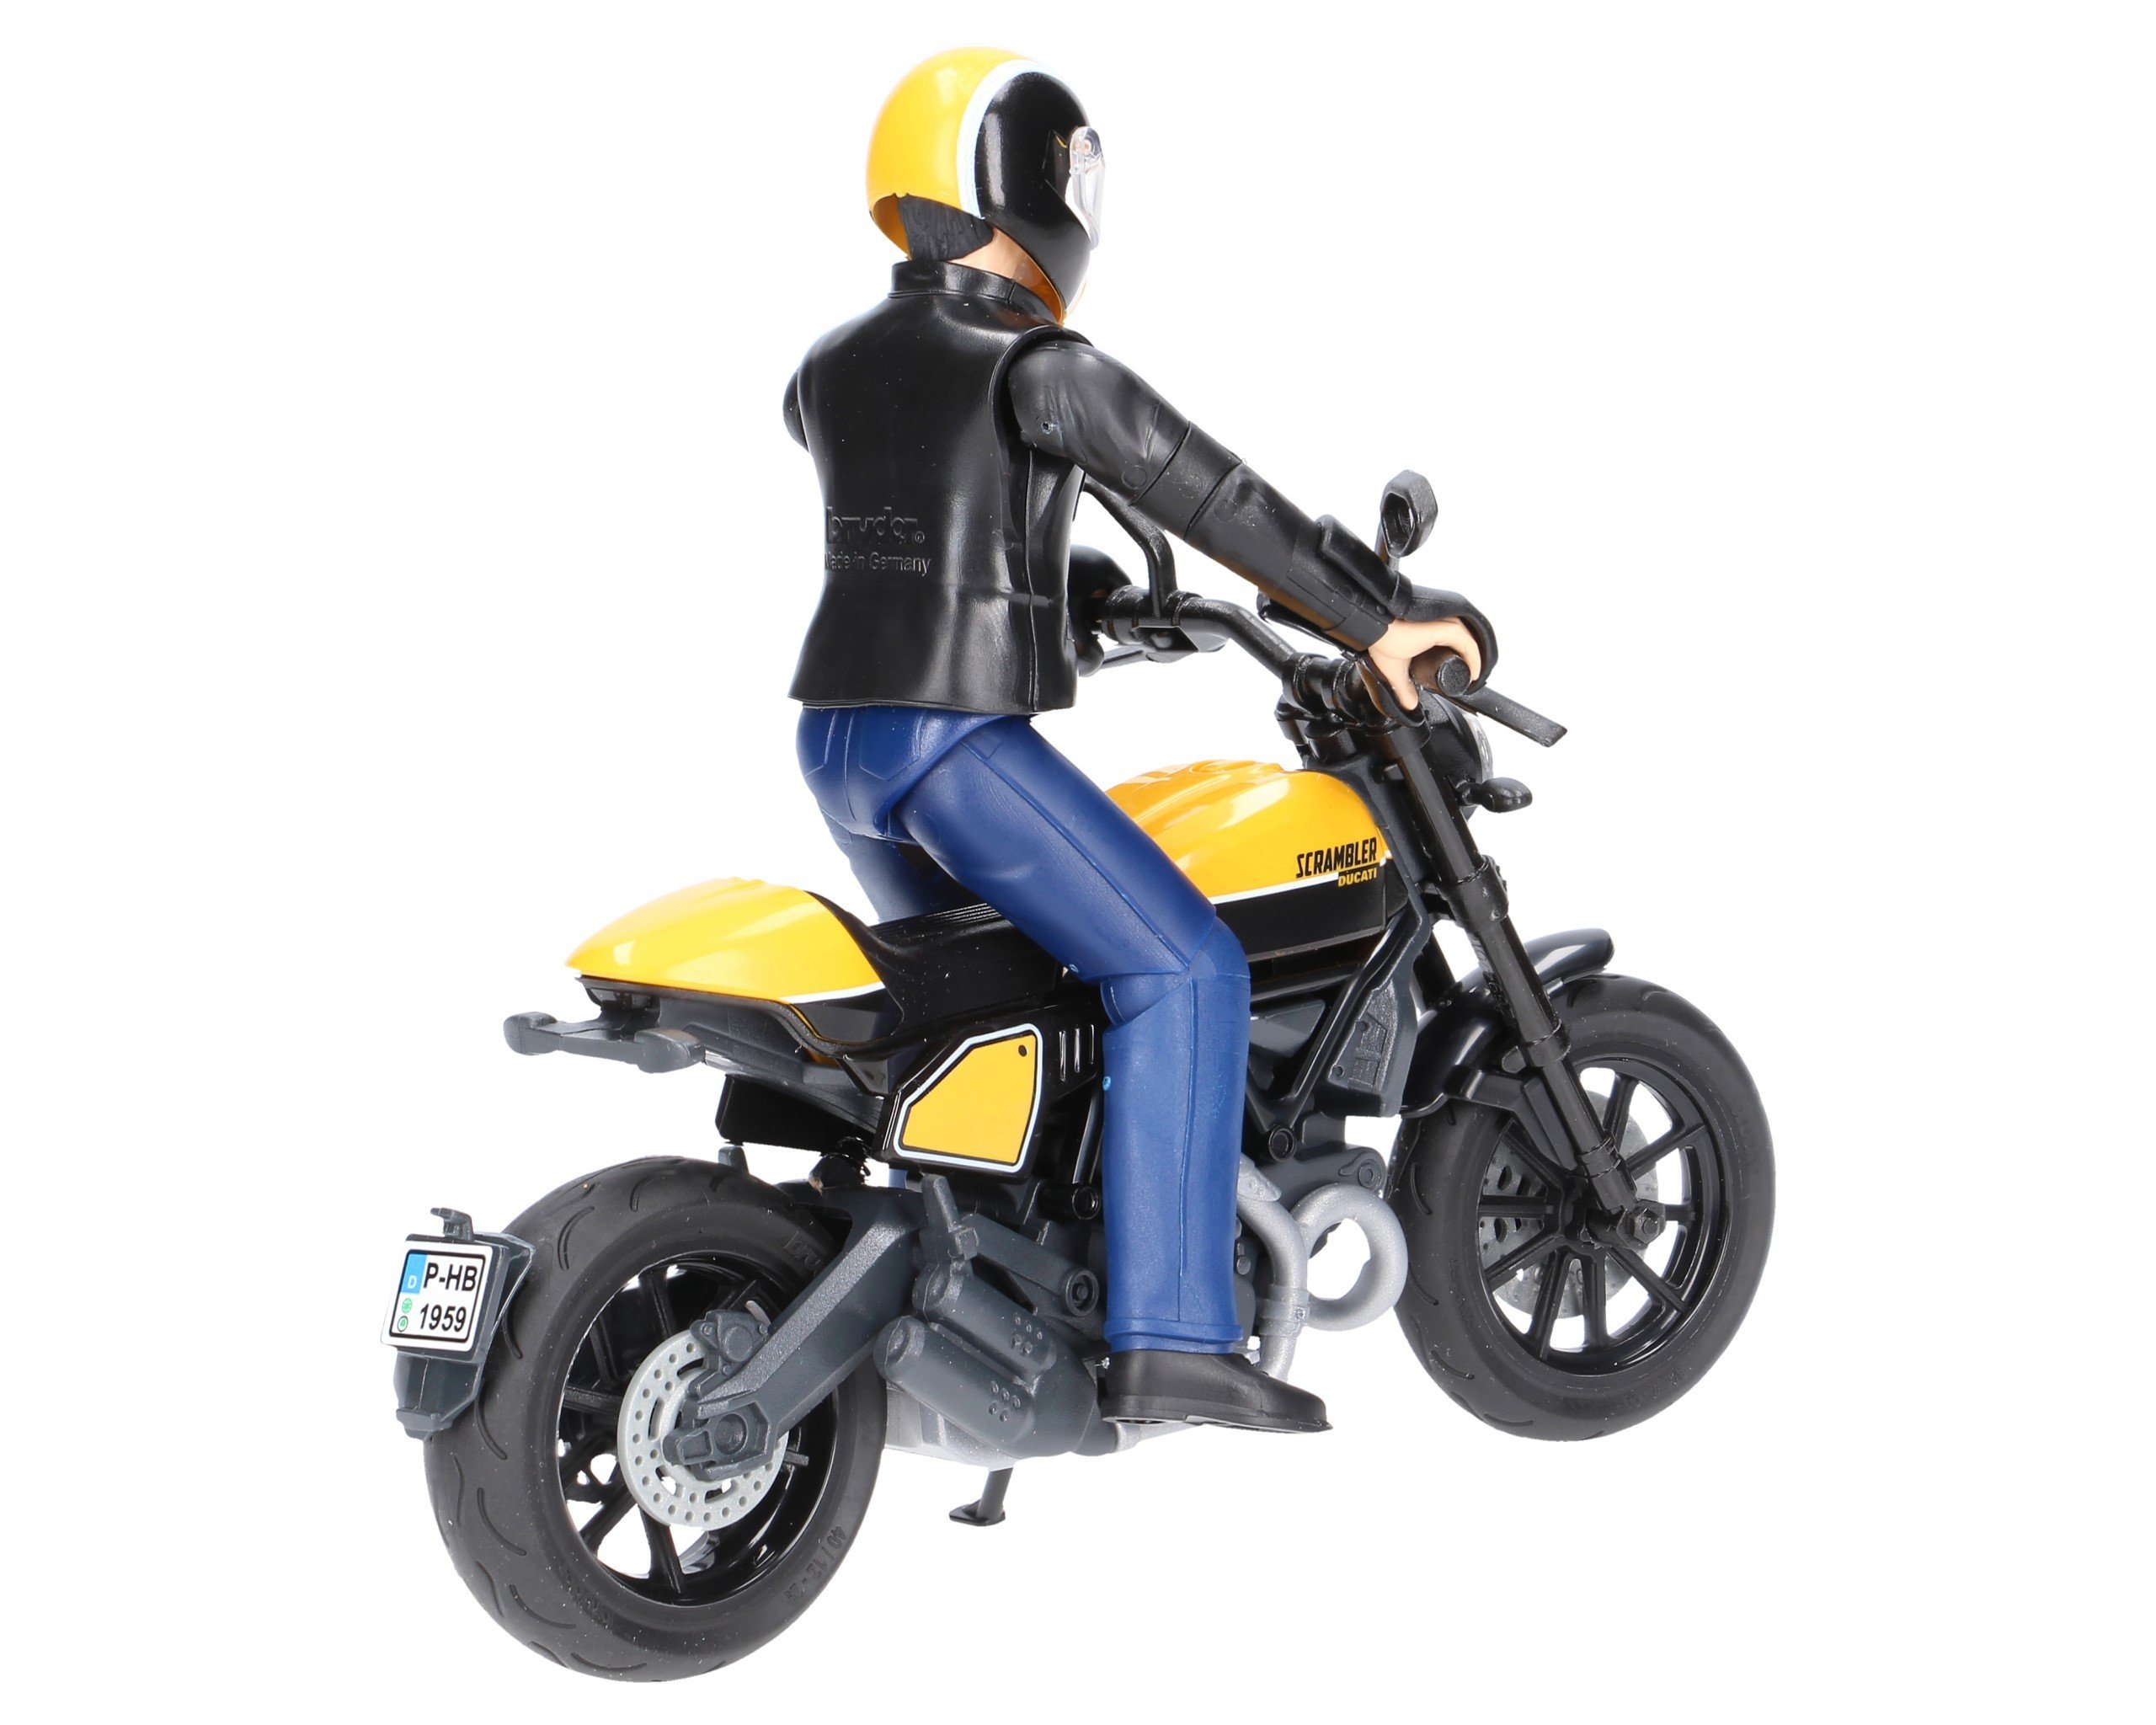 Bruder 63053 Motor Ducati Scrambler z figurką